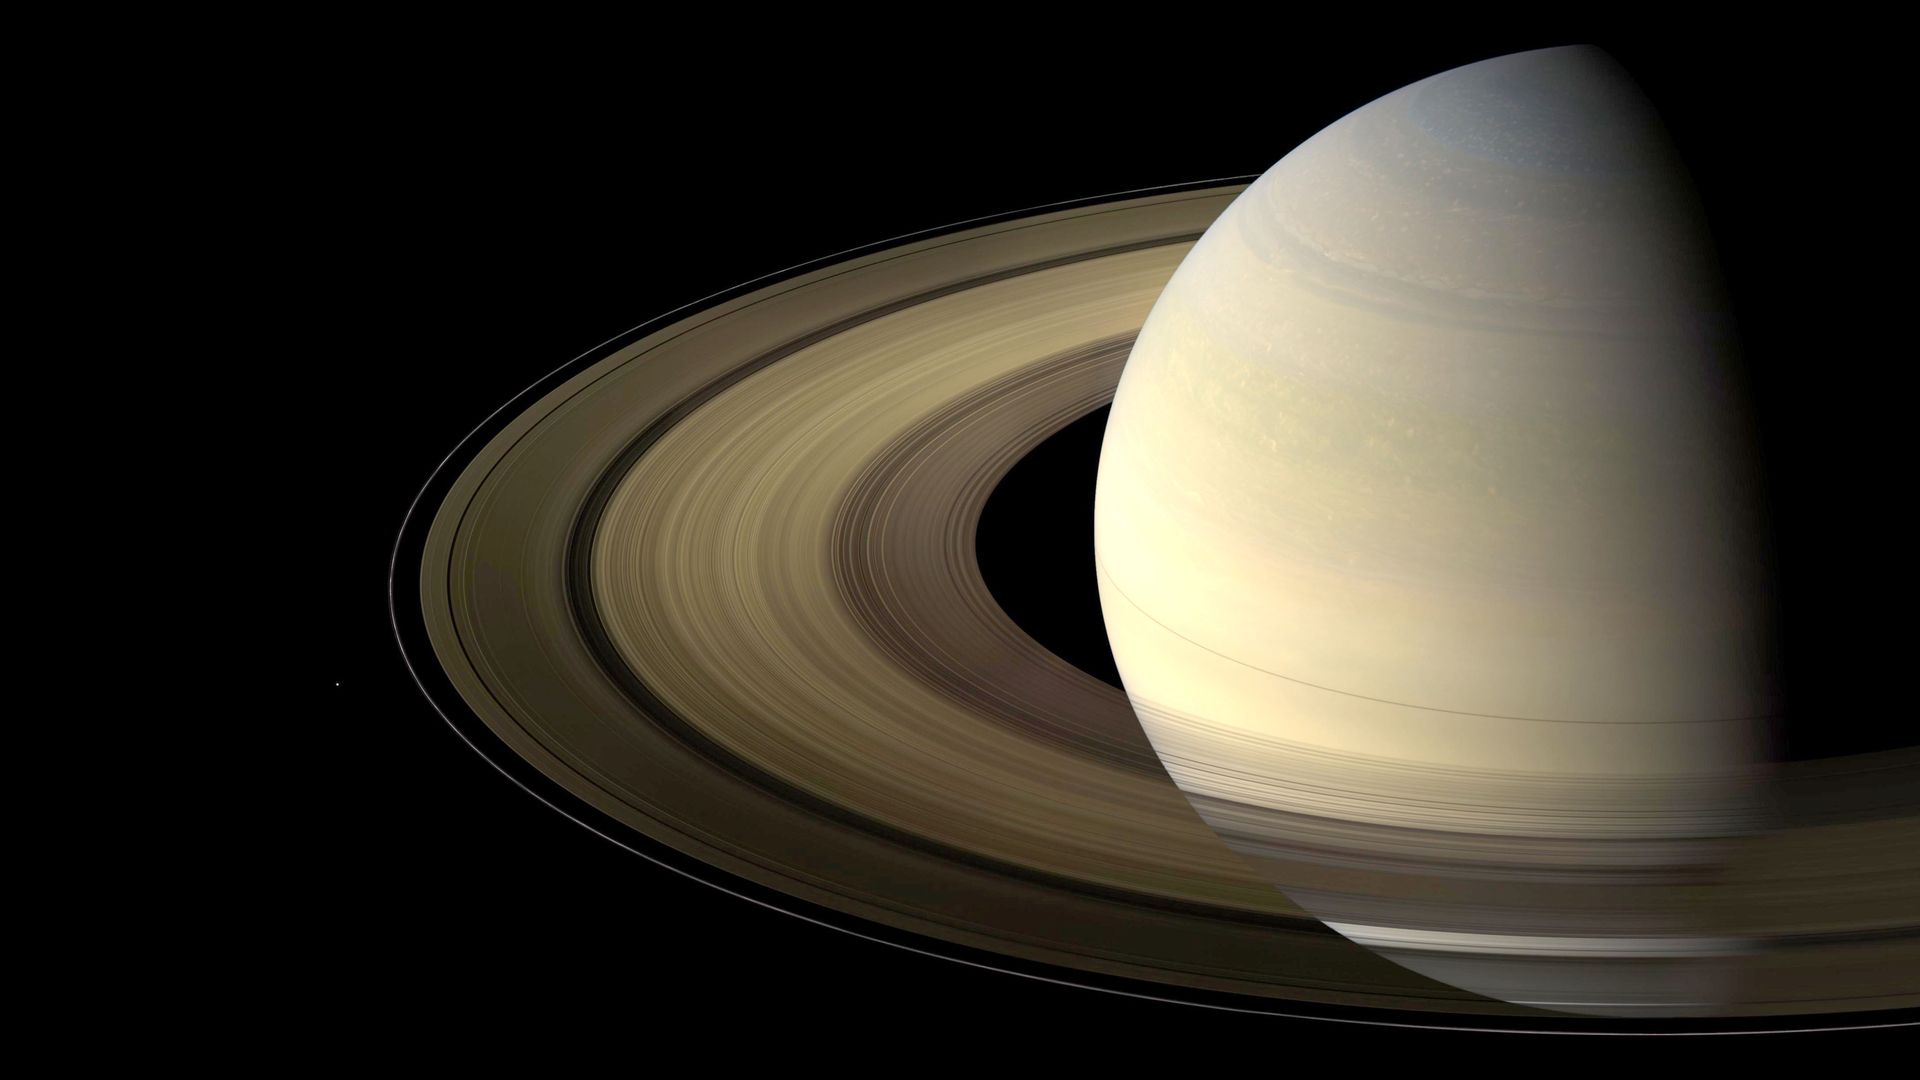 Ziemia będzie jak Saturn? Wkrótce może mieć podobne pierścienie